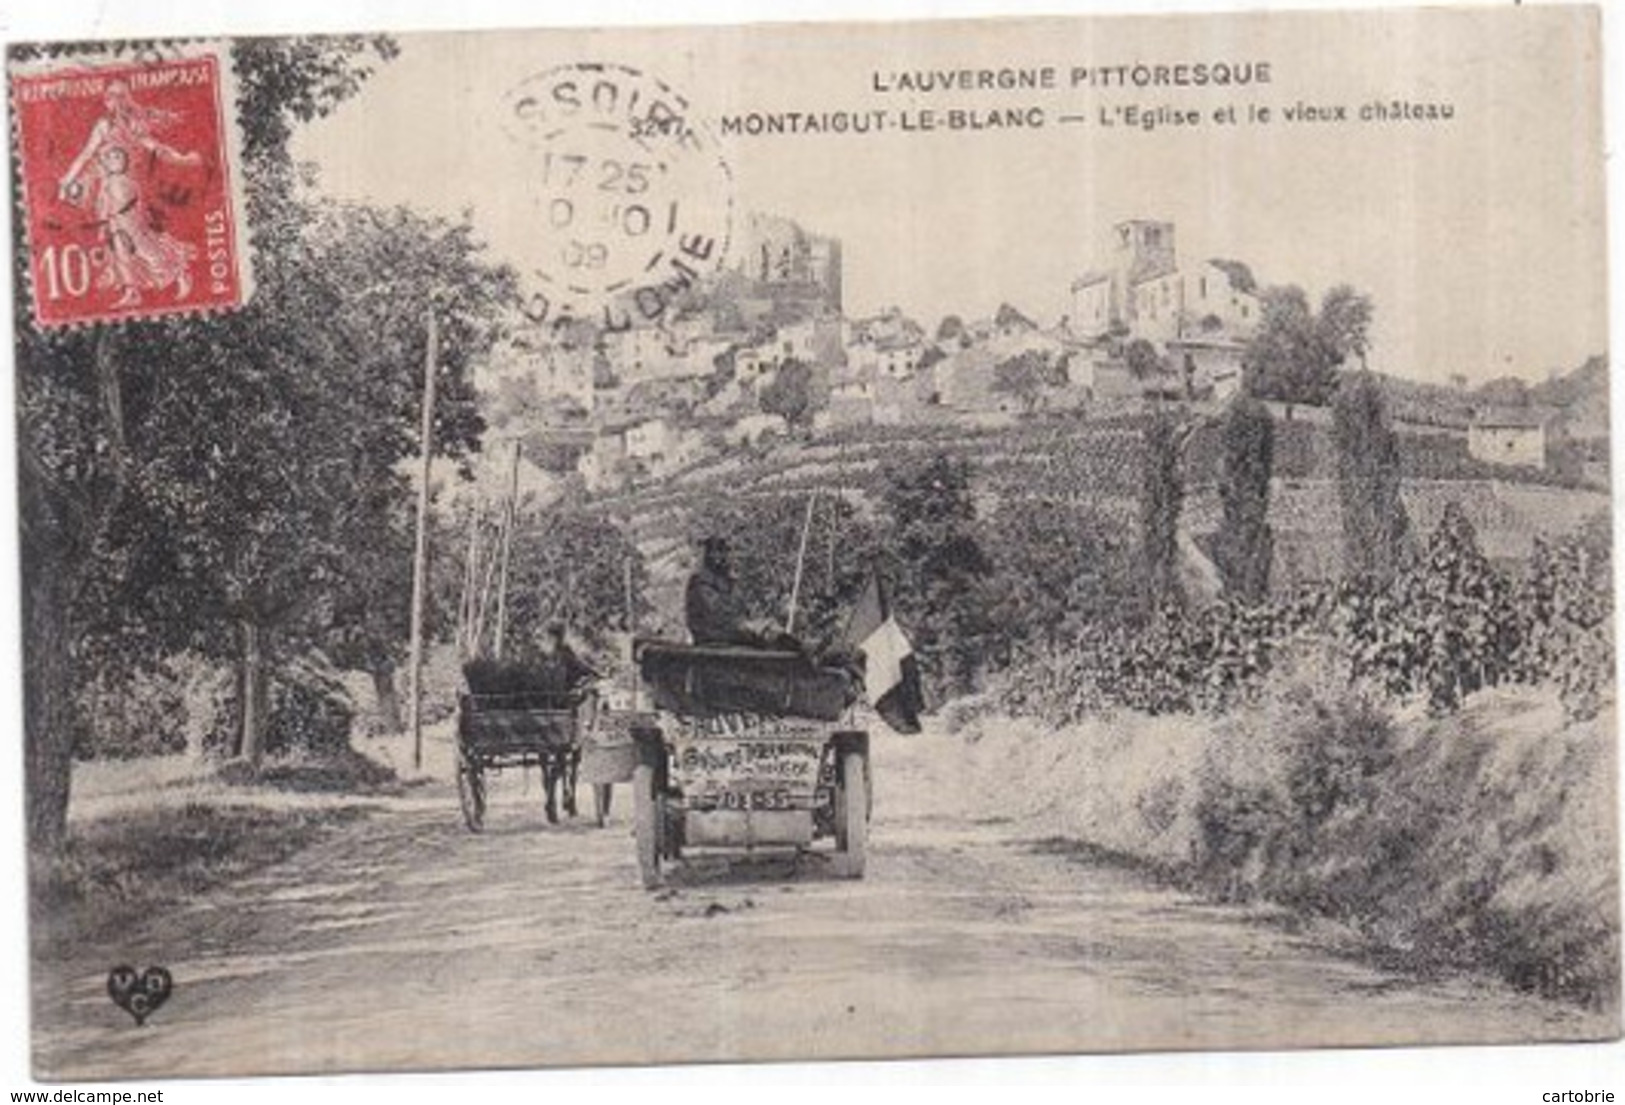 Dépt 63 - L'Auvergne Pittoresque - MONTAIGUT-LE-BLANC - L'Église Et Le Vieux Château - Voiture Automobile Concours - Montaigut